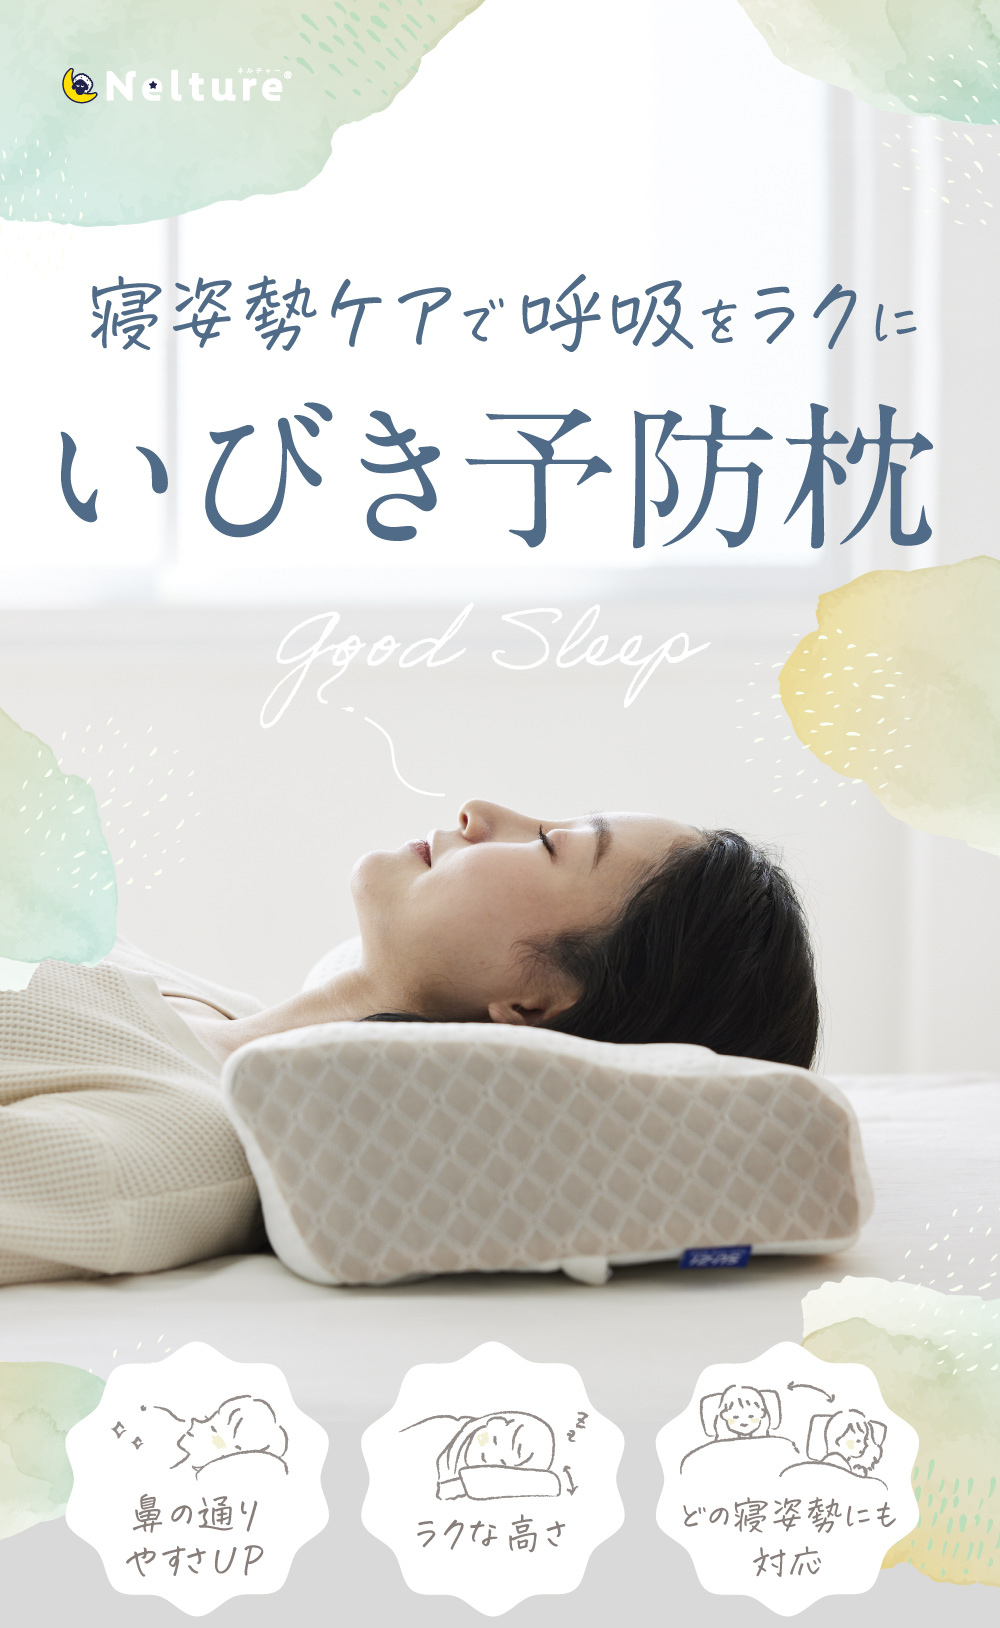 AS快眠枕2 SU-ZI(スージー) | Nelture